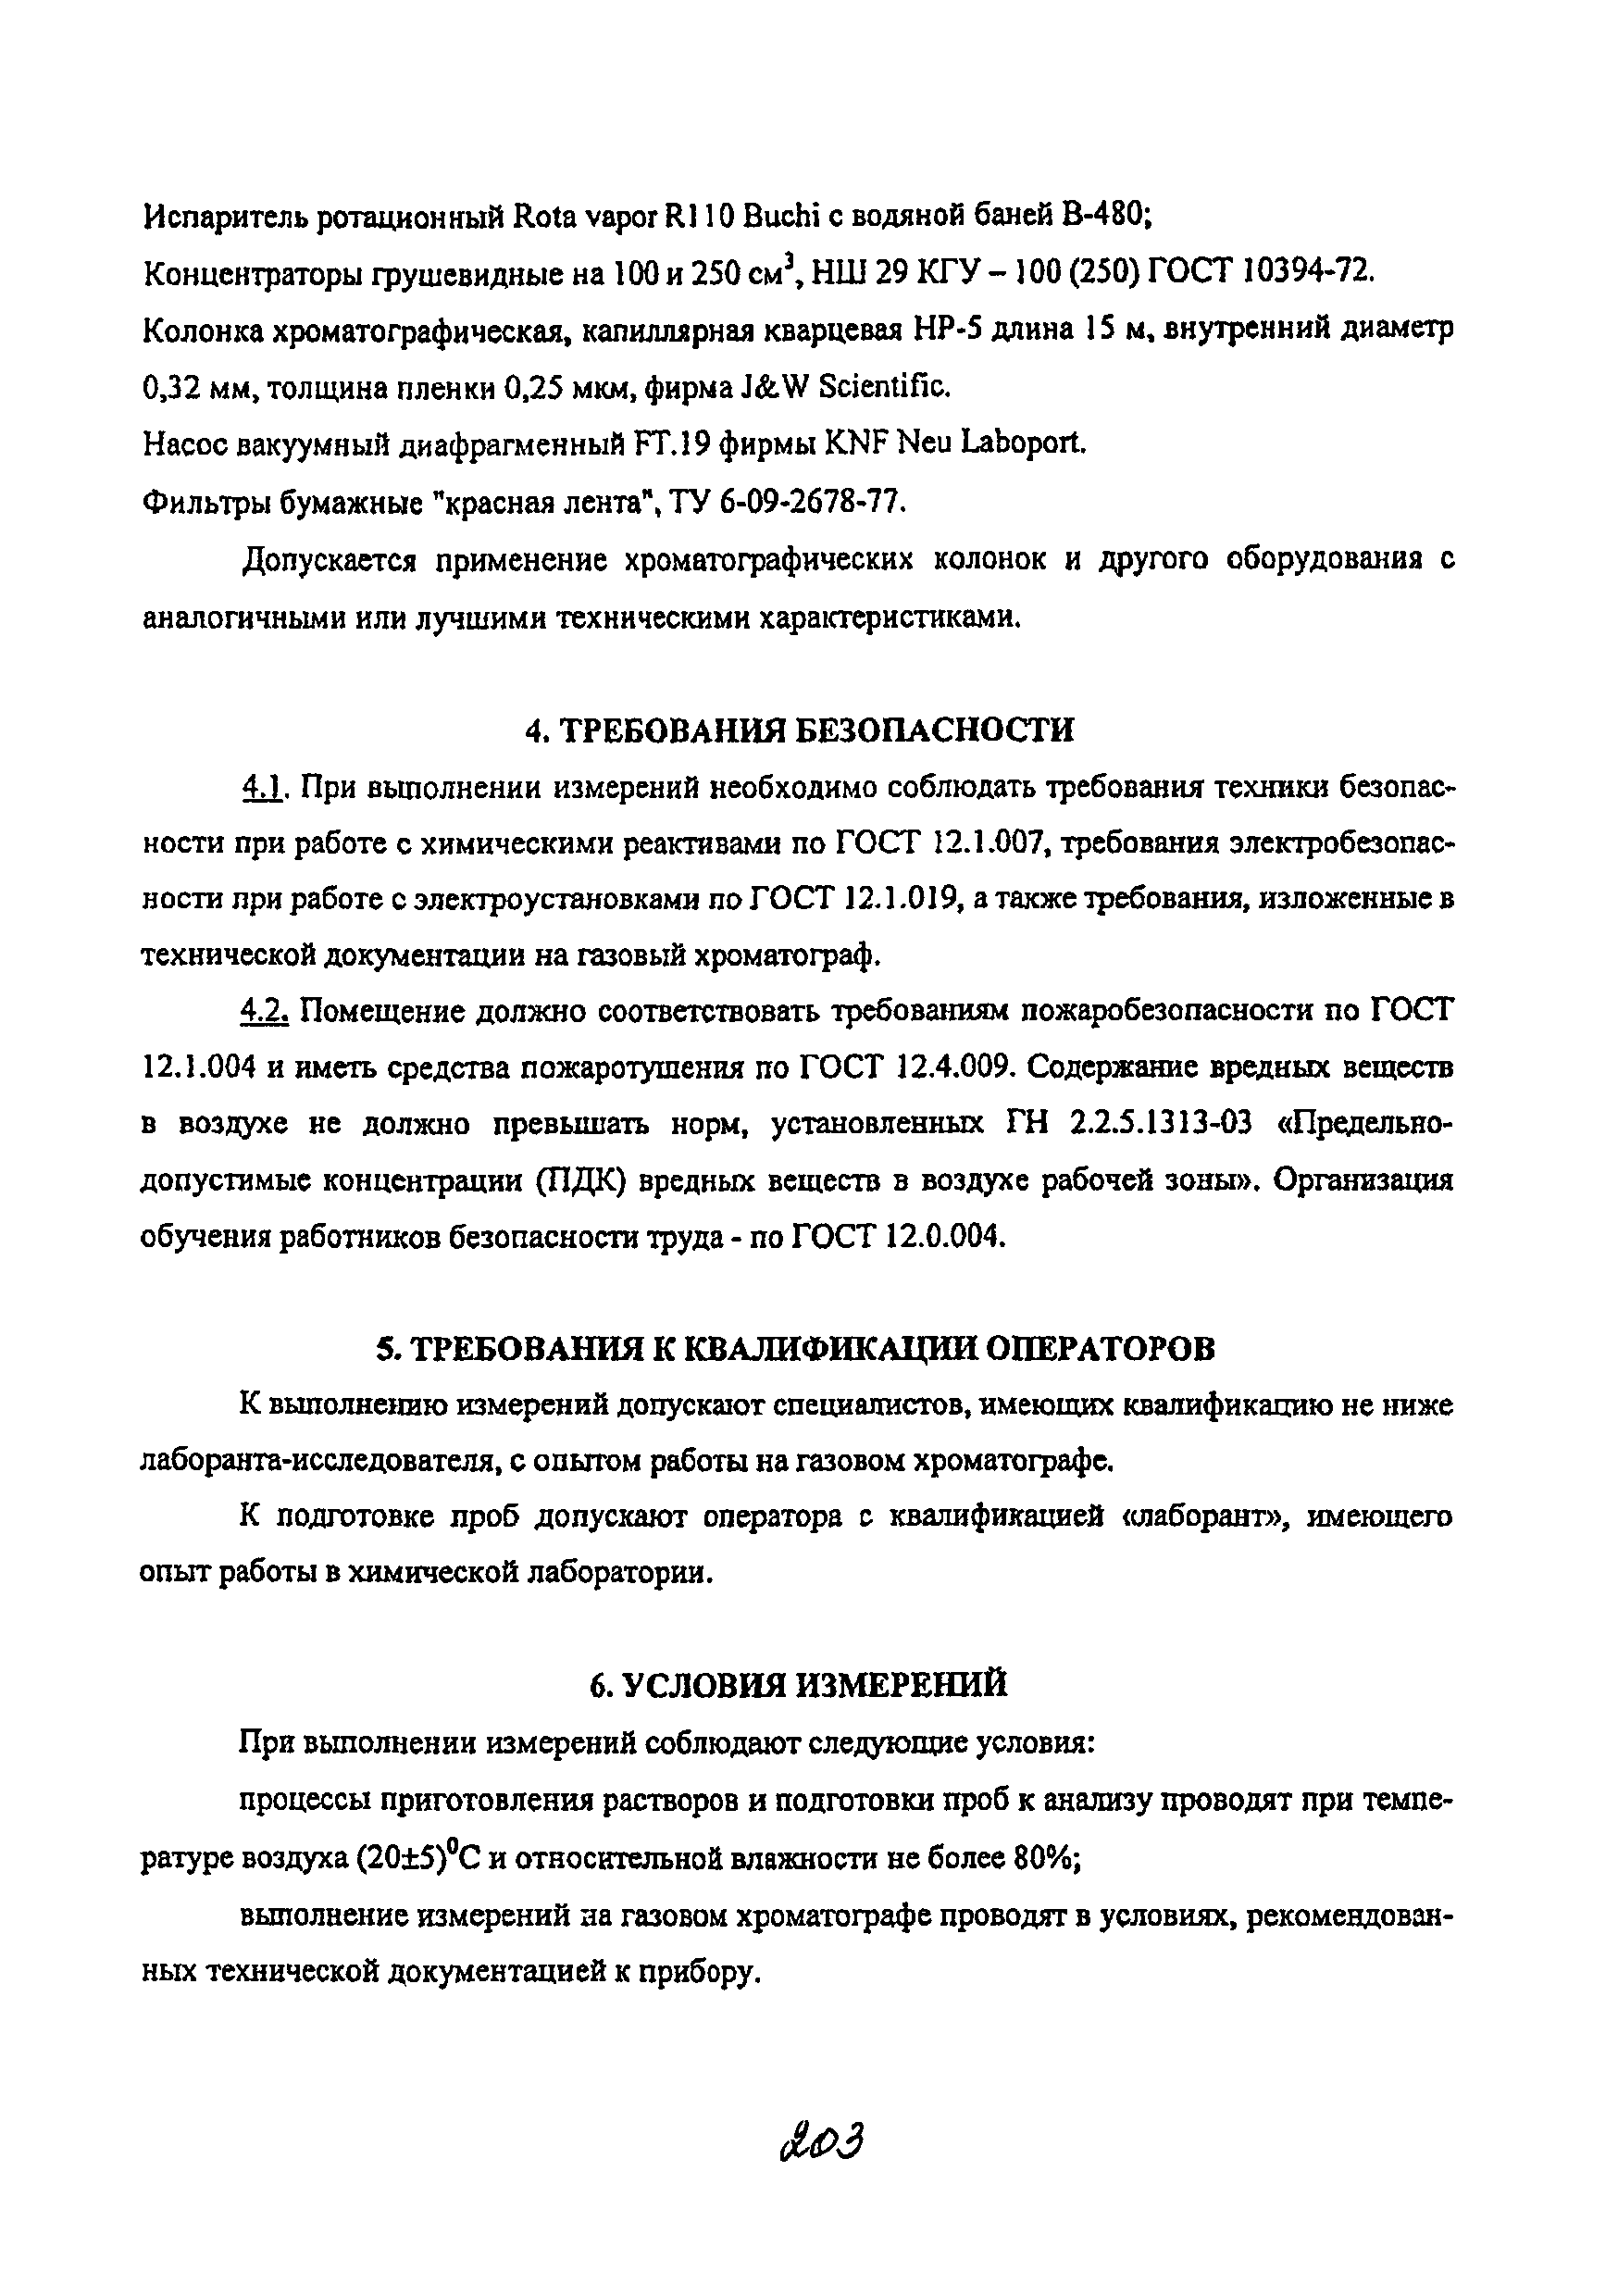 МУК 4.1.2175-07